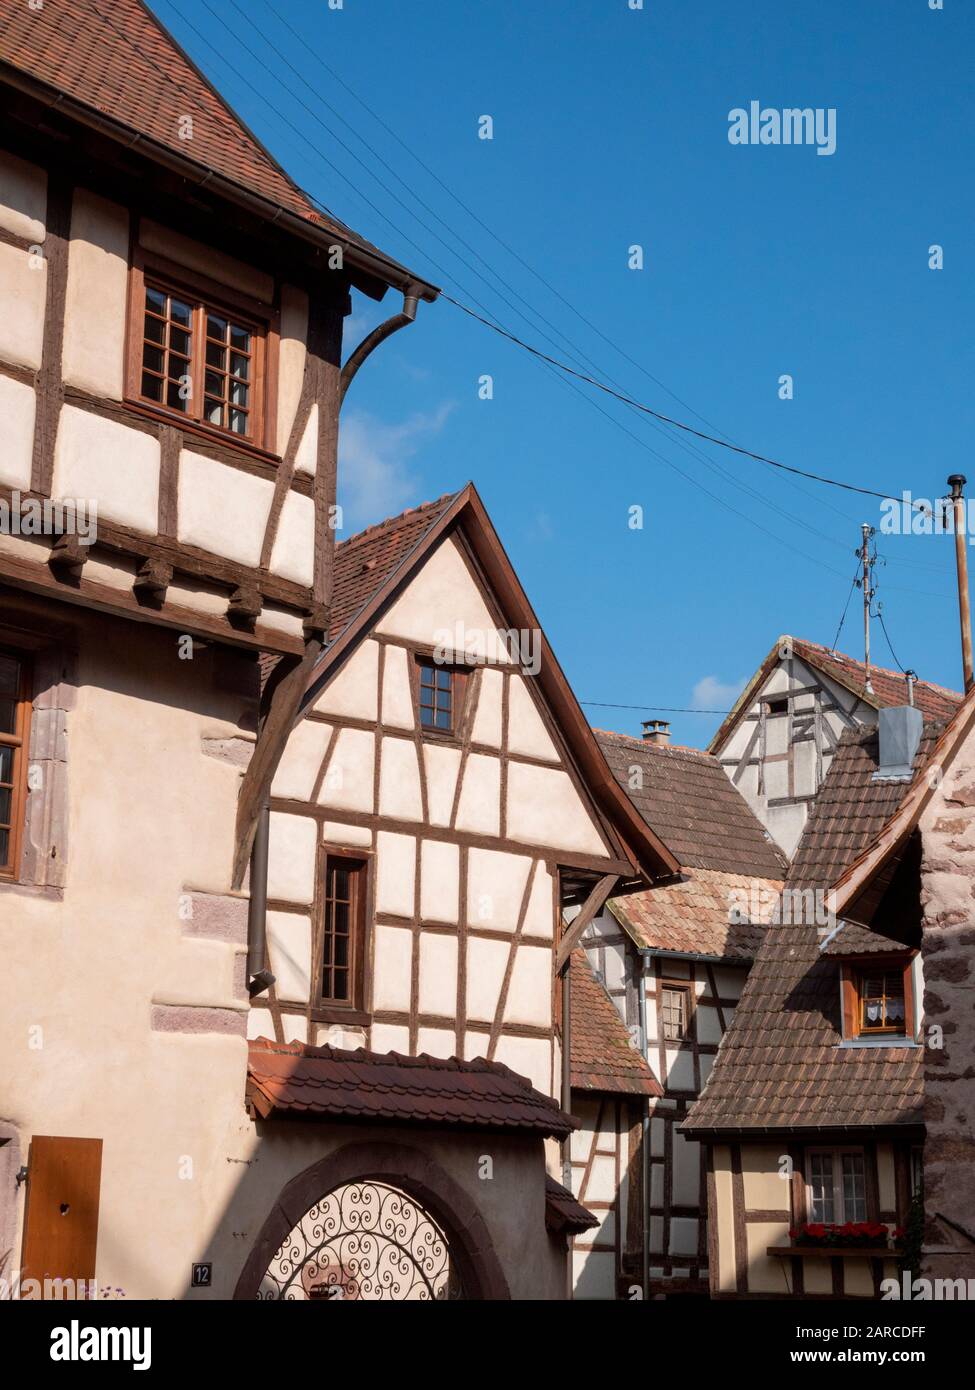 Bâtiments médiévaux à colombages et clocher de l'église de Colmar Alsace France Banque D'Images